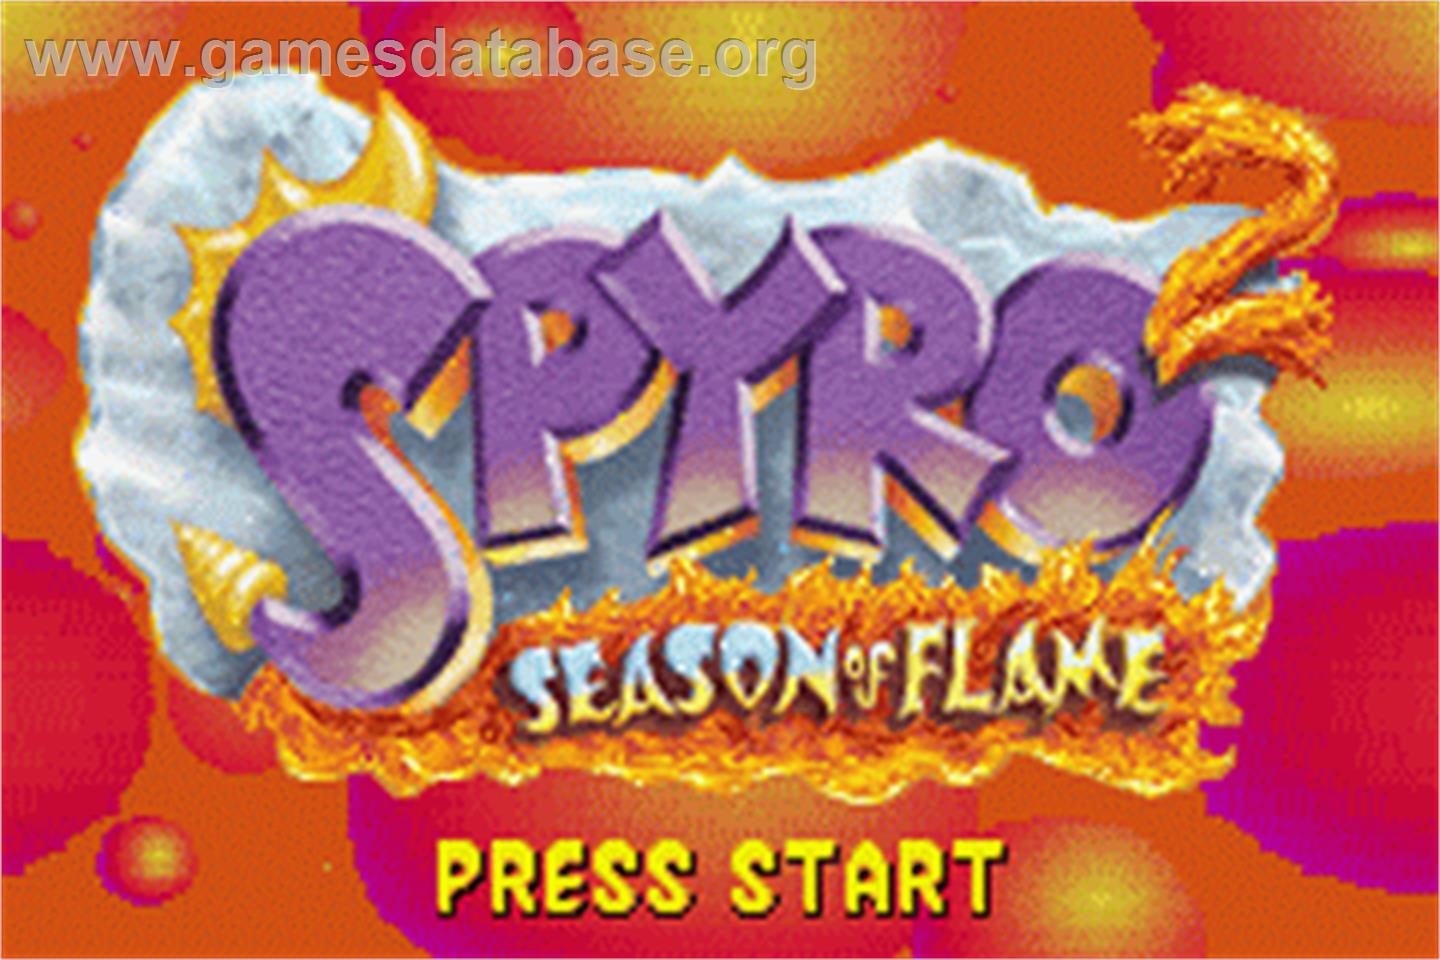 Spyro 2: Season of Flame - Nintendo Game Boy Advance - Artwork - Title Screen